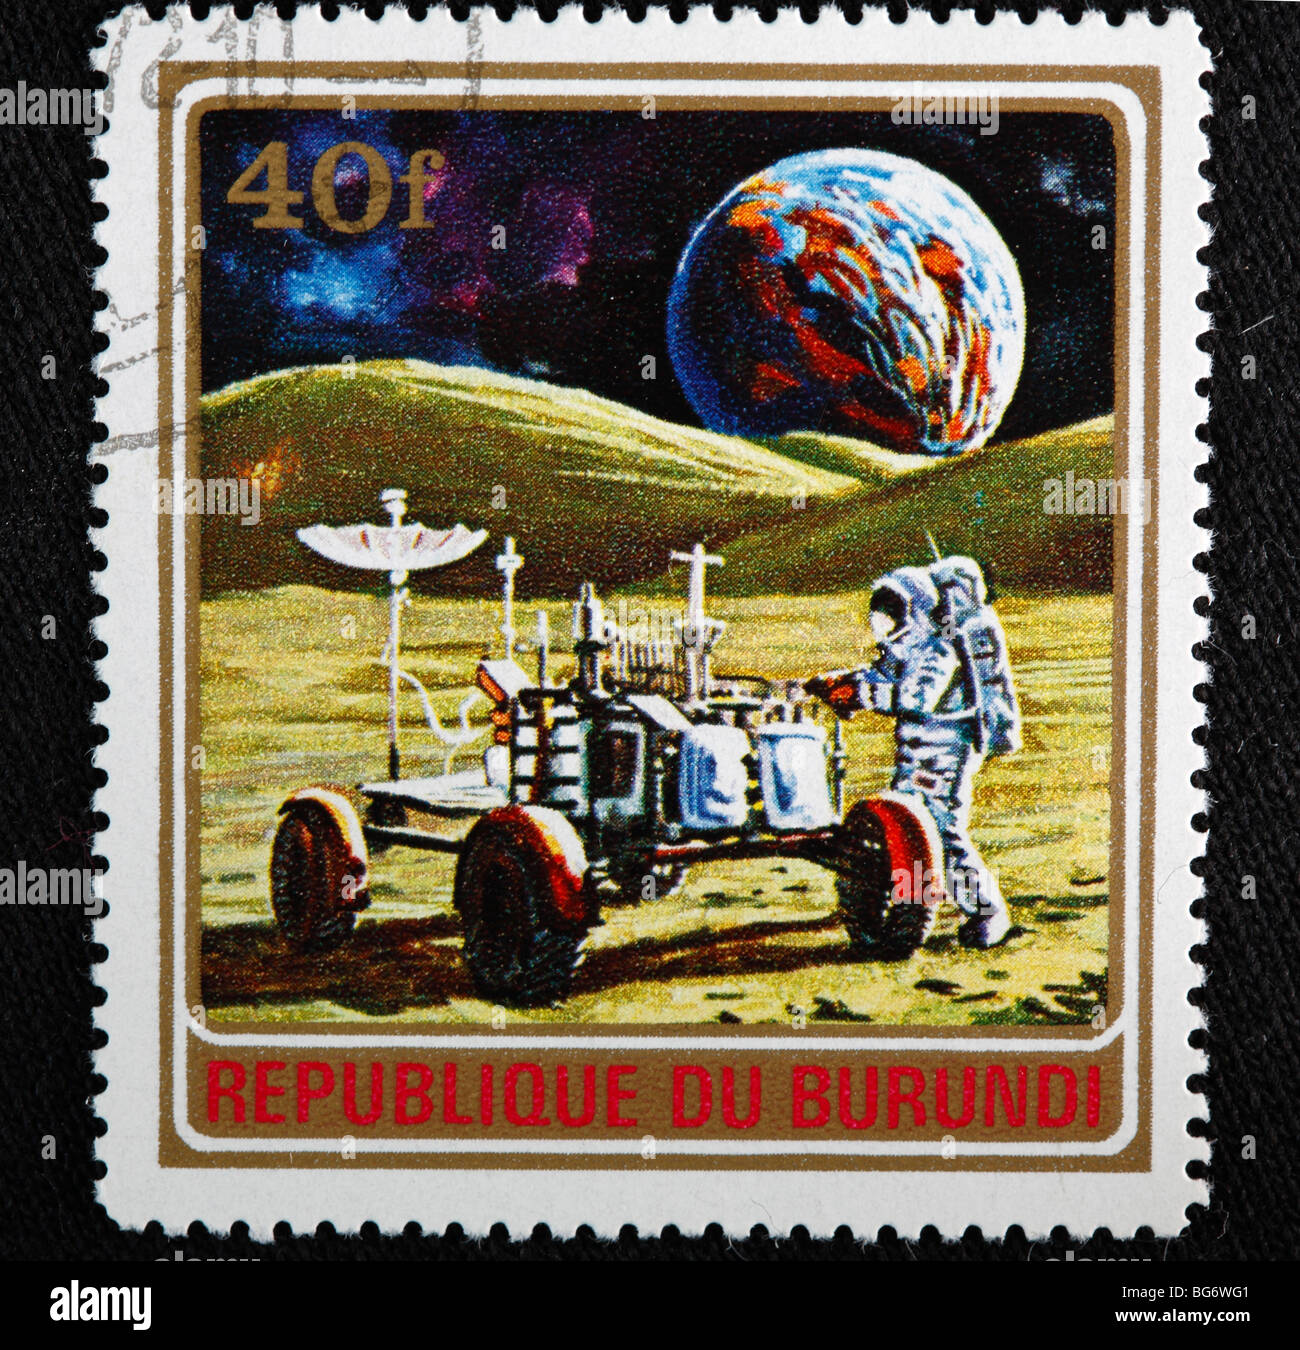 Erkundung des Weltraums, Briefmarke, Burundi Stockfoto